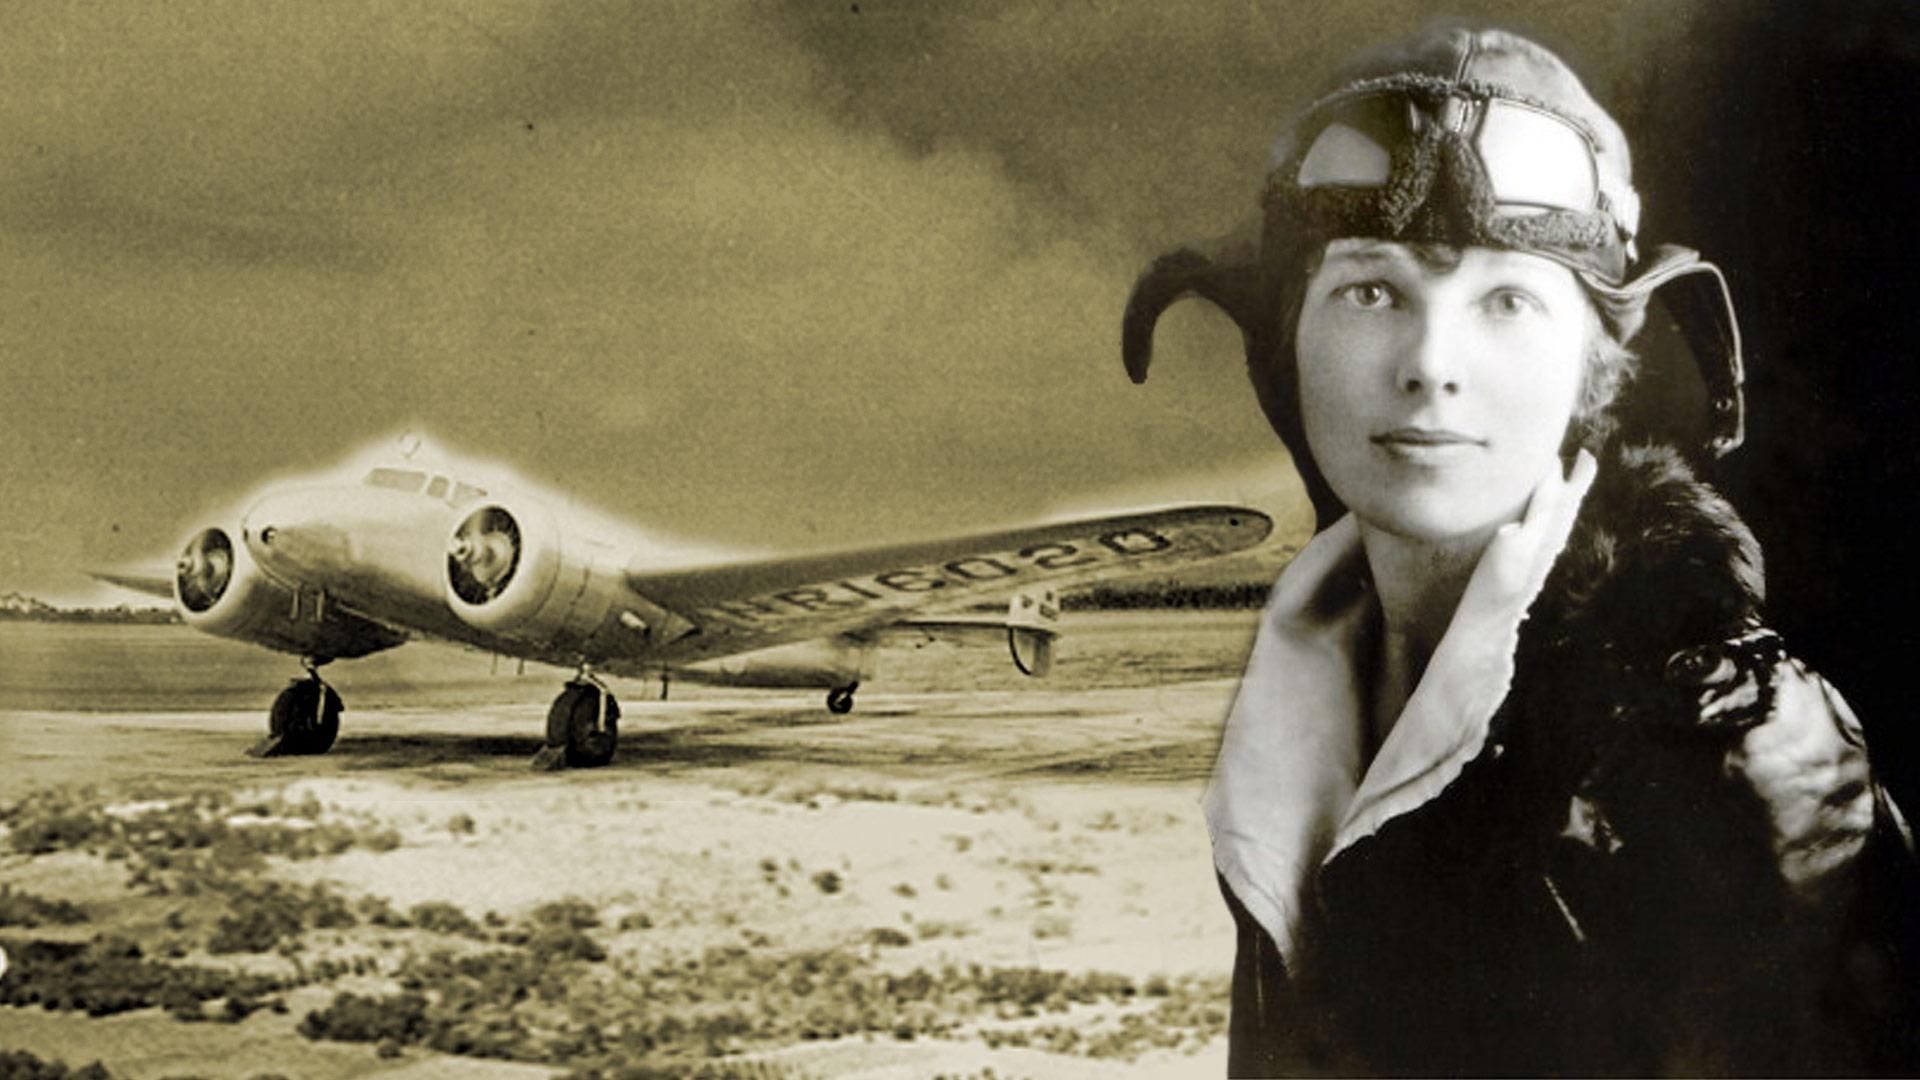 91 Amelia Earhart Wallpapers On WallpaperSafari.